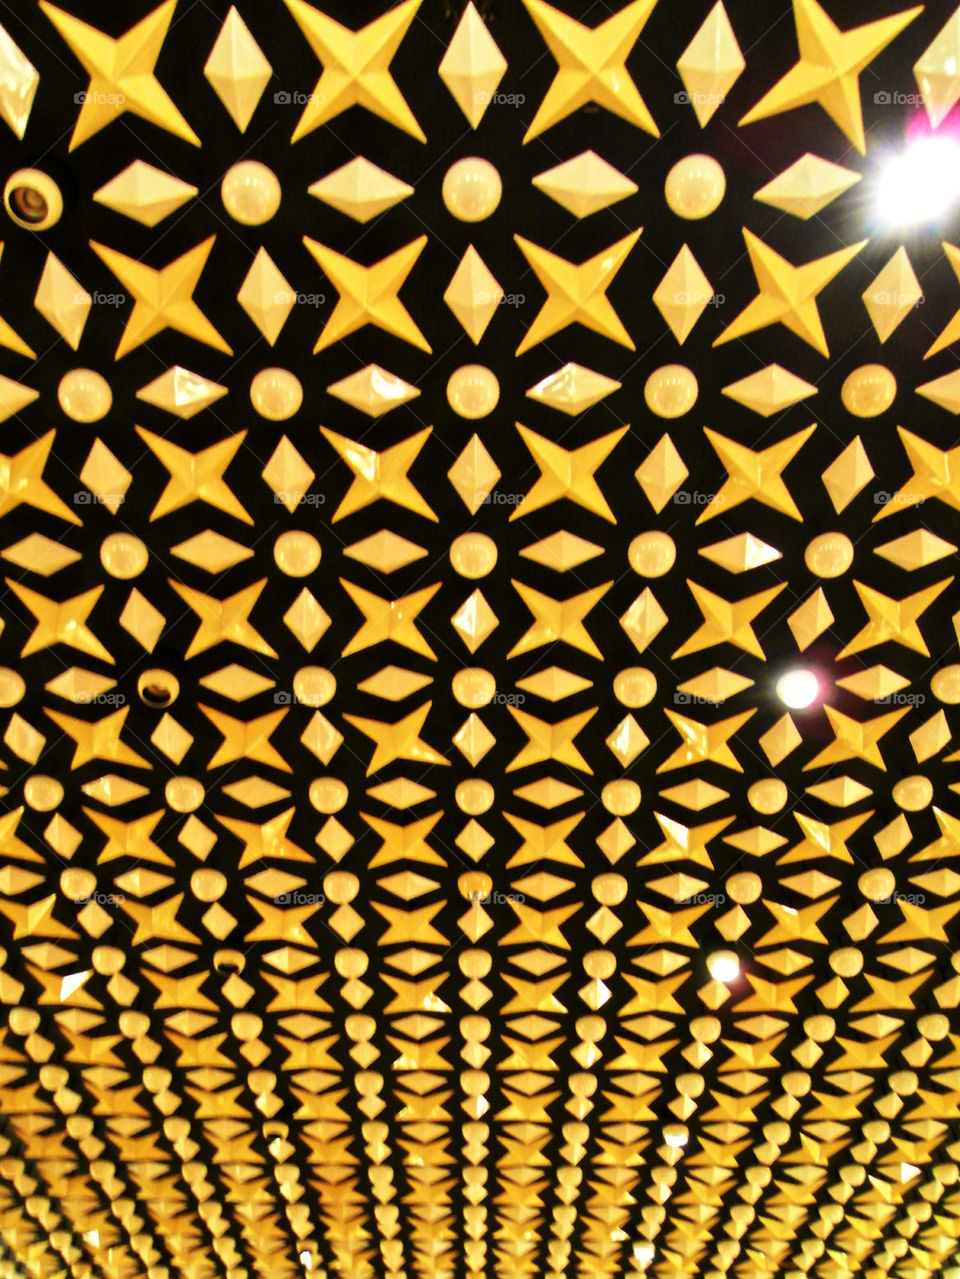 light lookingup stars ceiling by woodyyeah